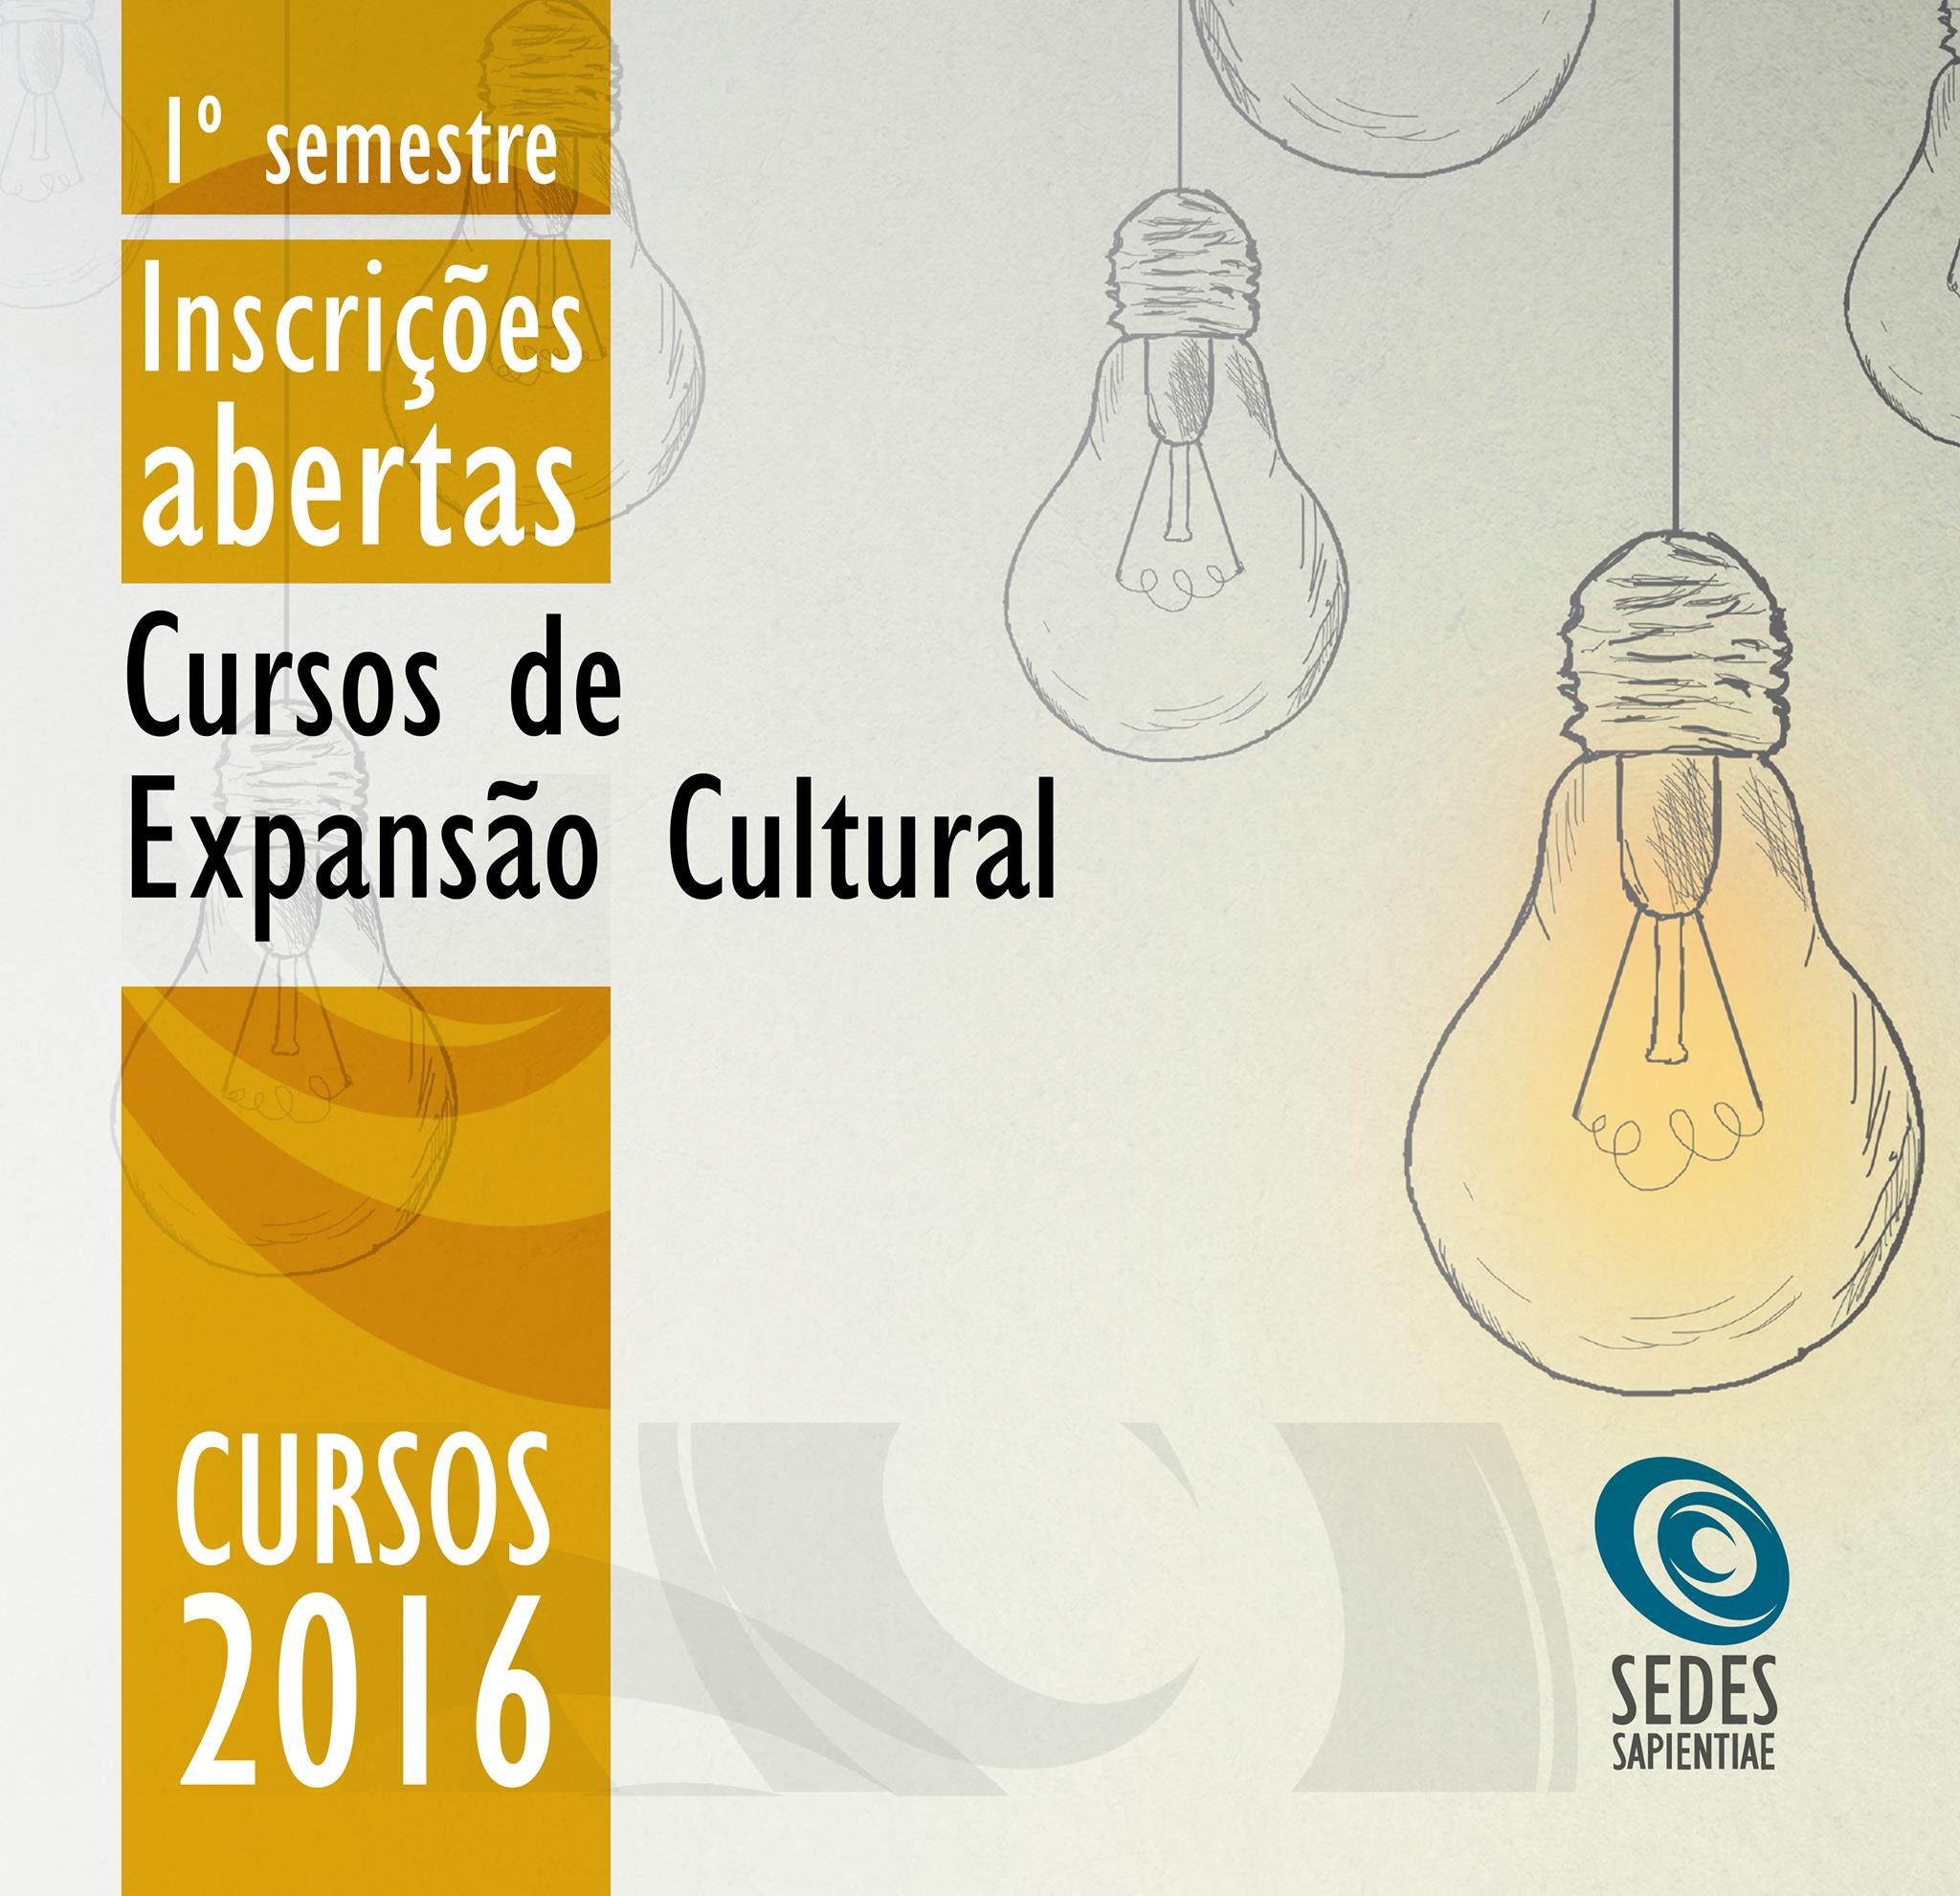 psicologiasdobrasil.com.br - Instituto Sedes abre inscrições para cursos de Expansão Cultural